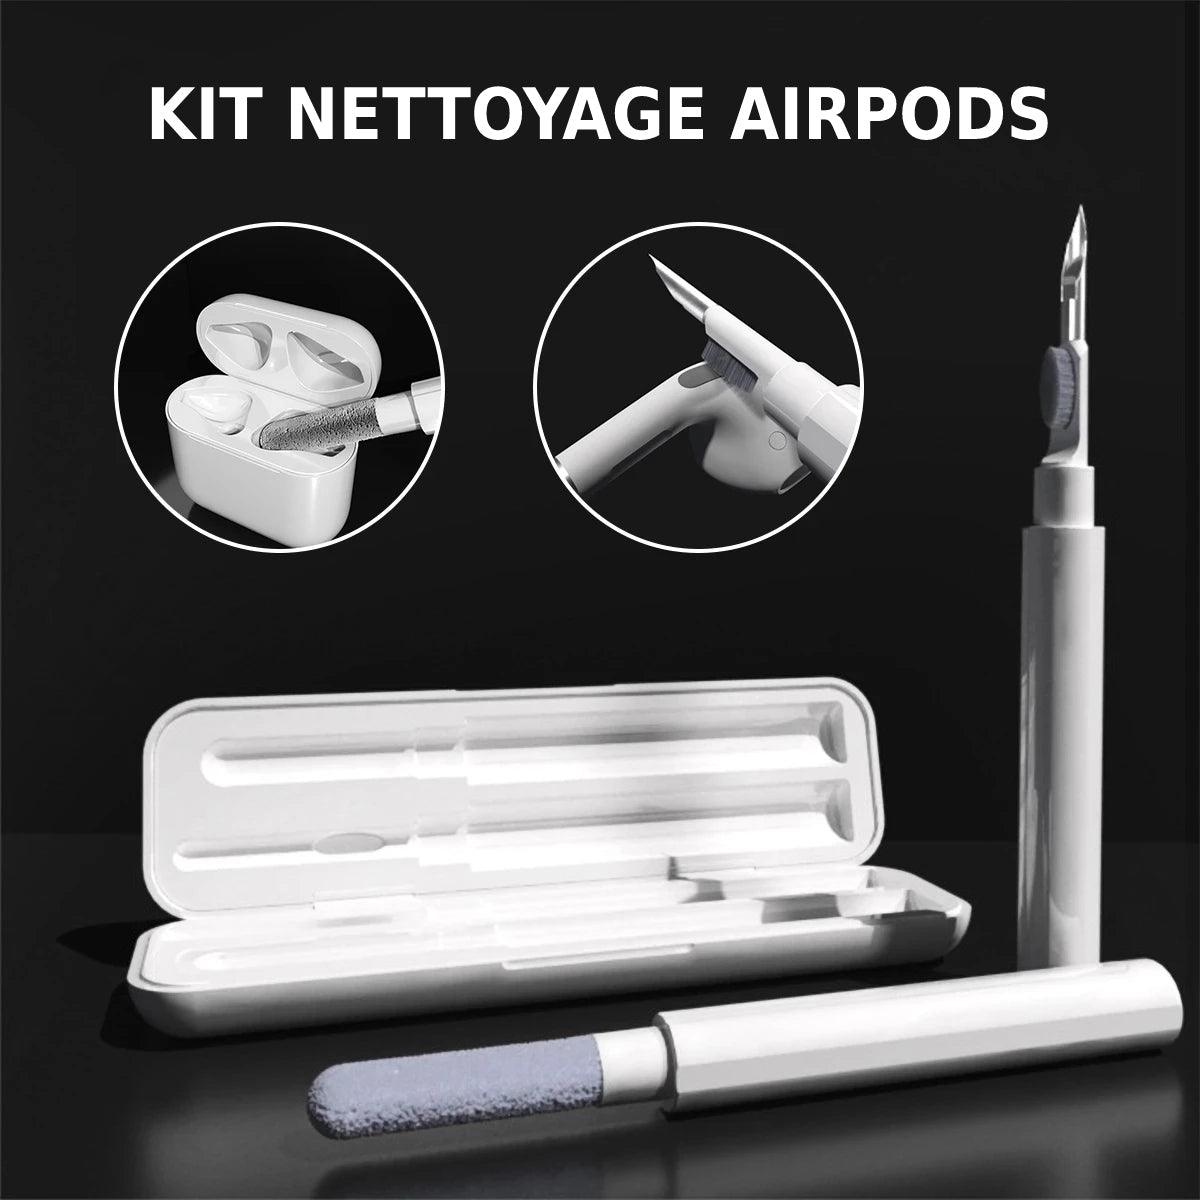 Kit Nettoyage airpods écouteurs - Equipement conducteur